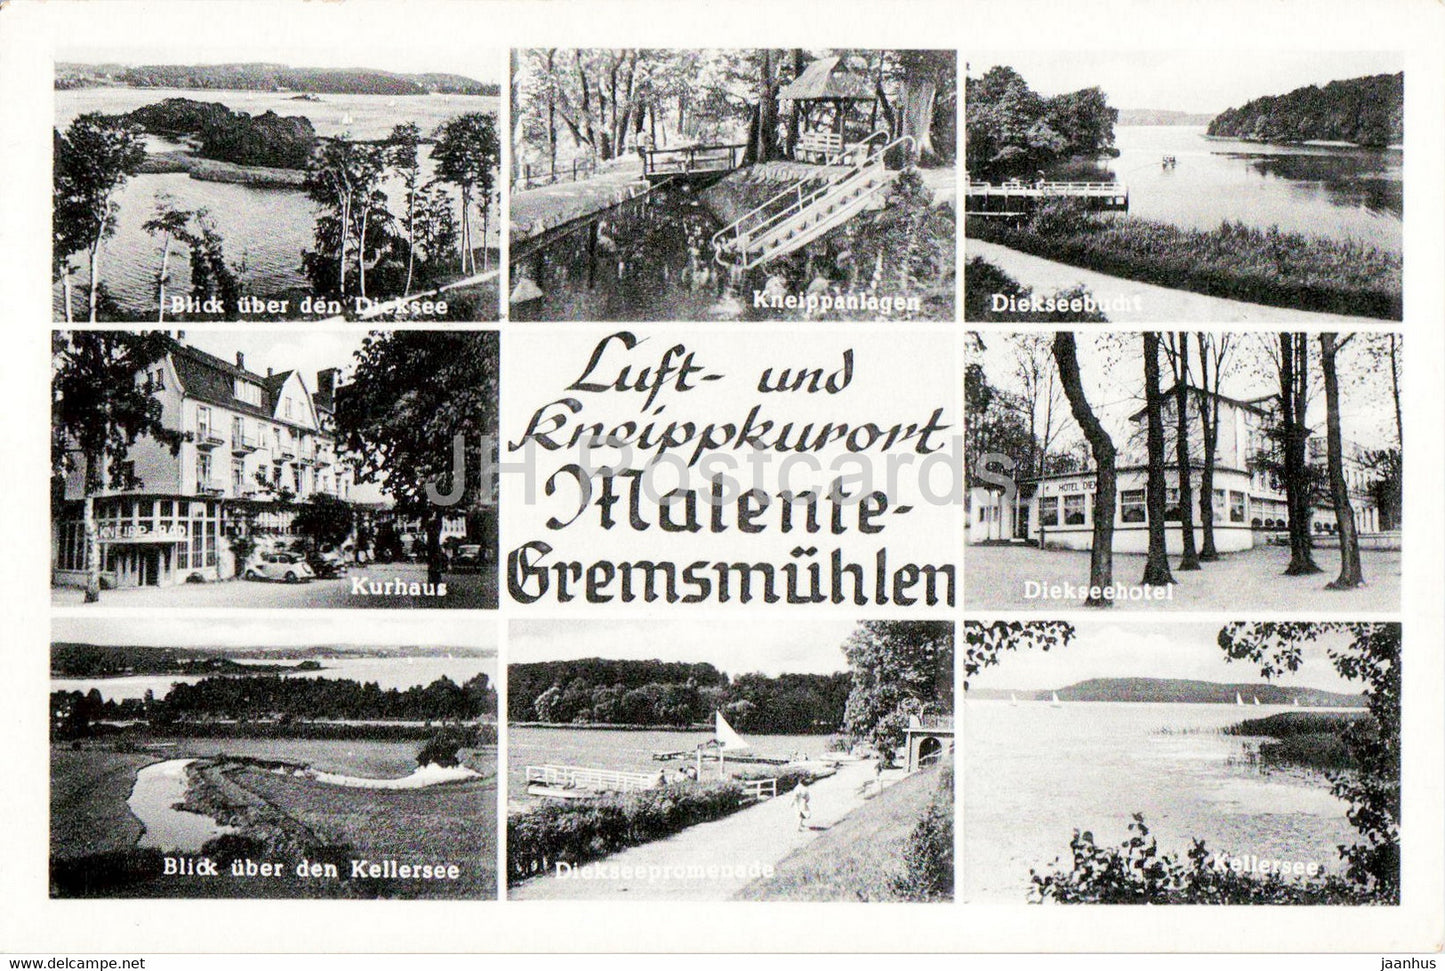 Luft und Kneippkurort Malente Gremsmuhlen - Kurhaus - Diekseehotel - hotel - old postcard - Germany - unused - JH Postcards